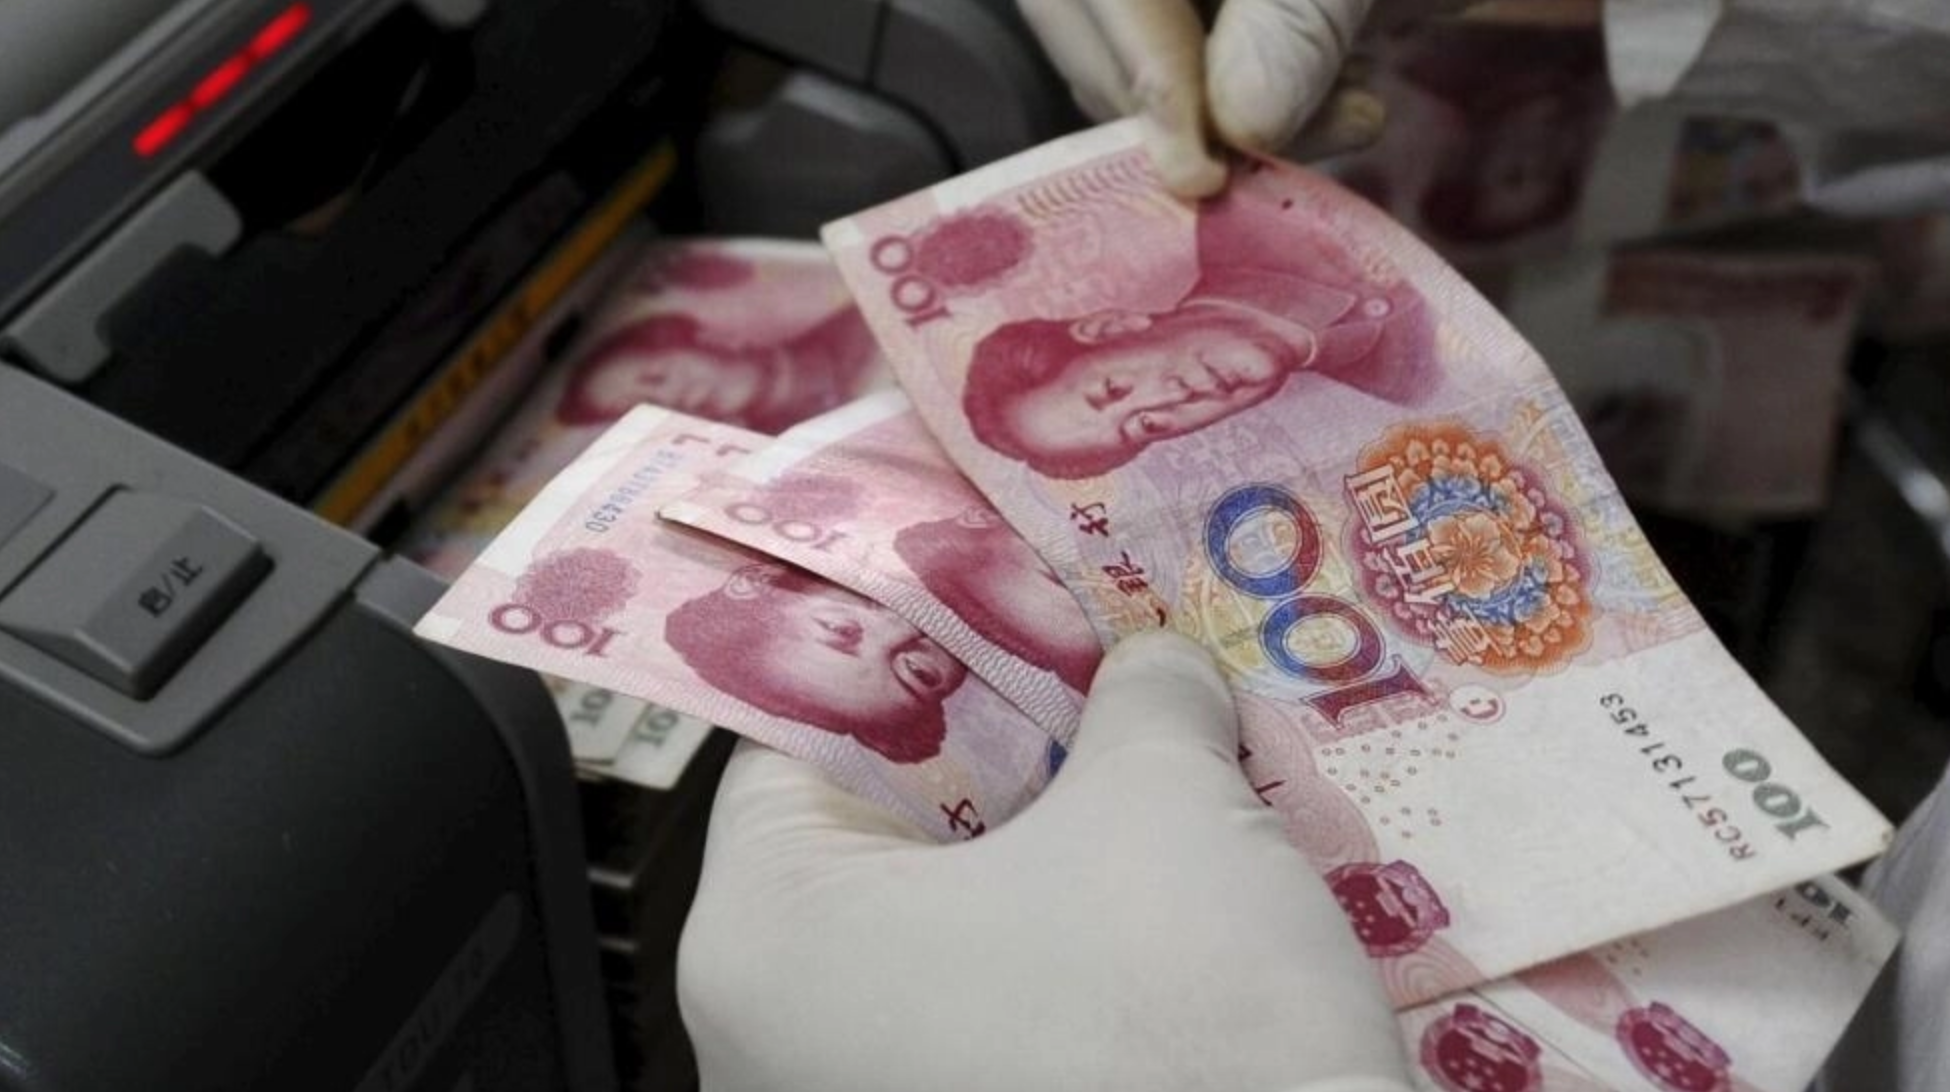 Trung Quốc rơi vào 'bẫy nợ' do chính nước này giăng ra - Ảnh 1.